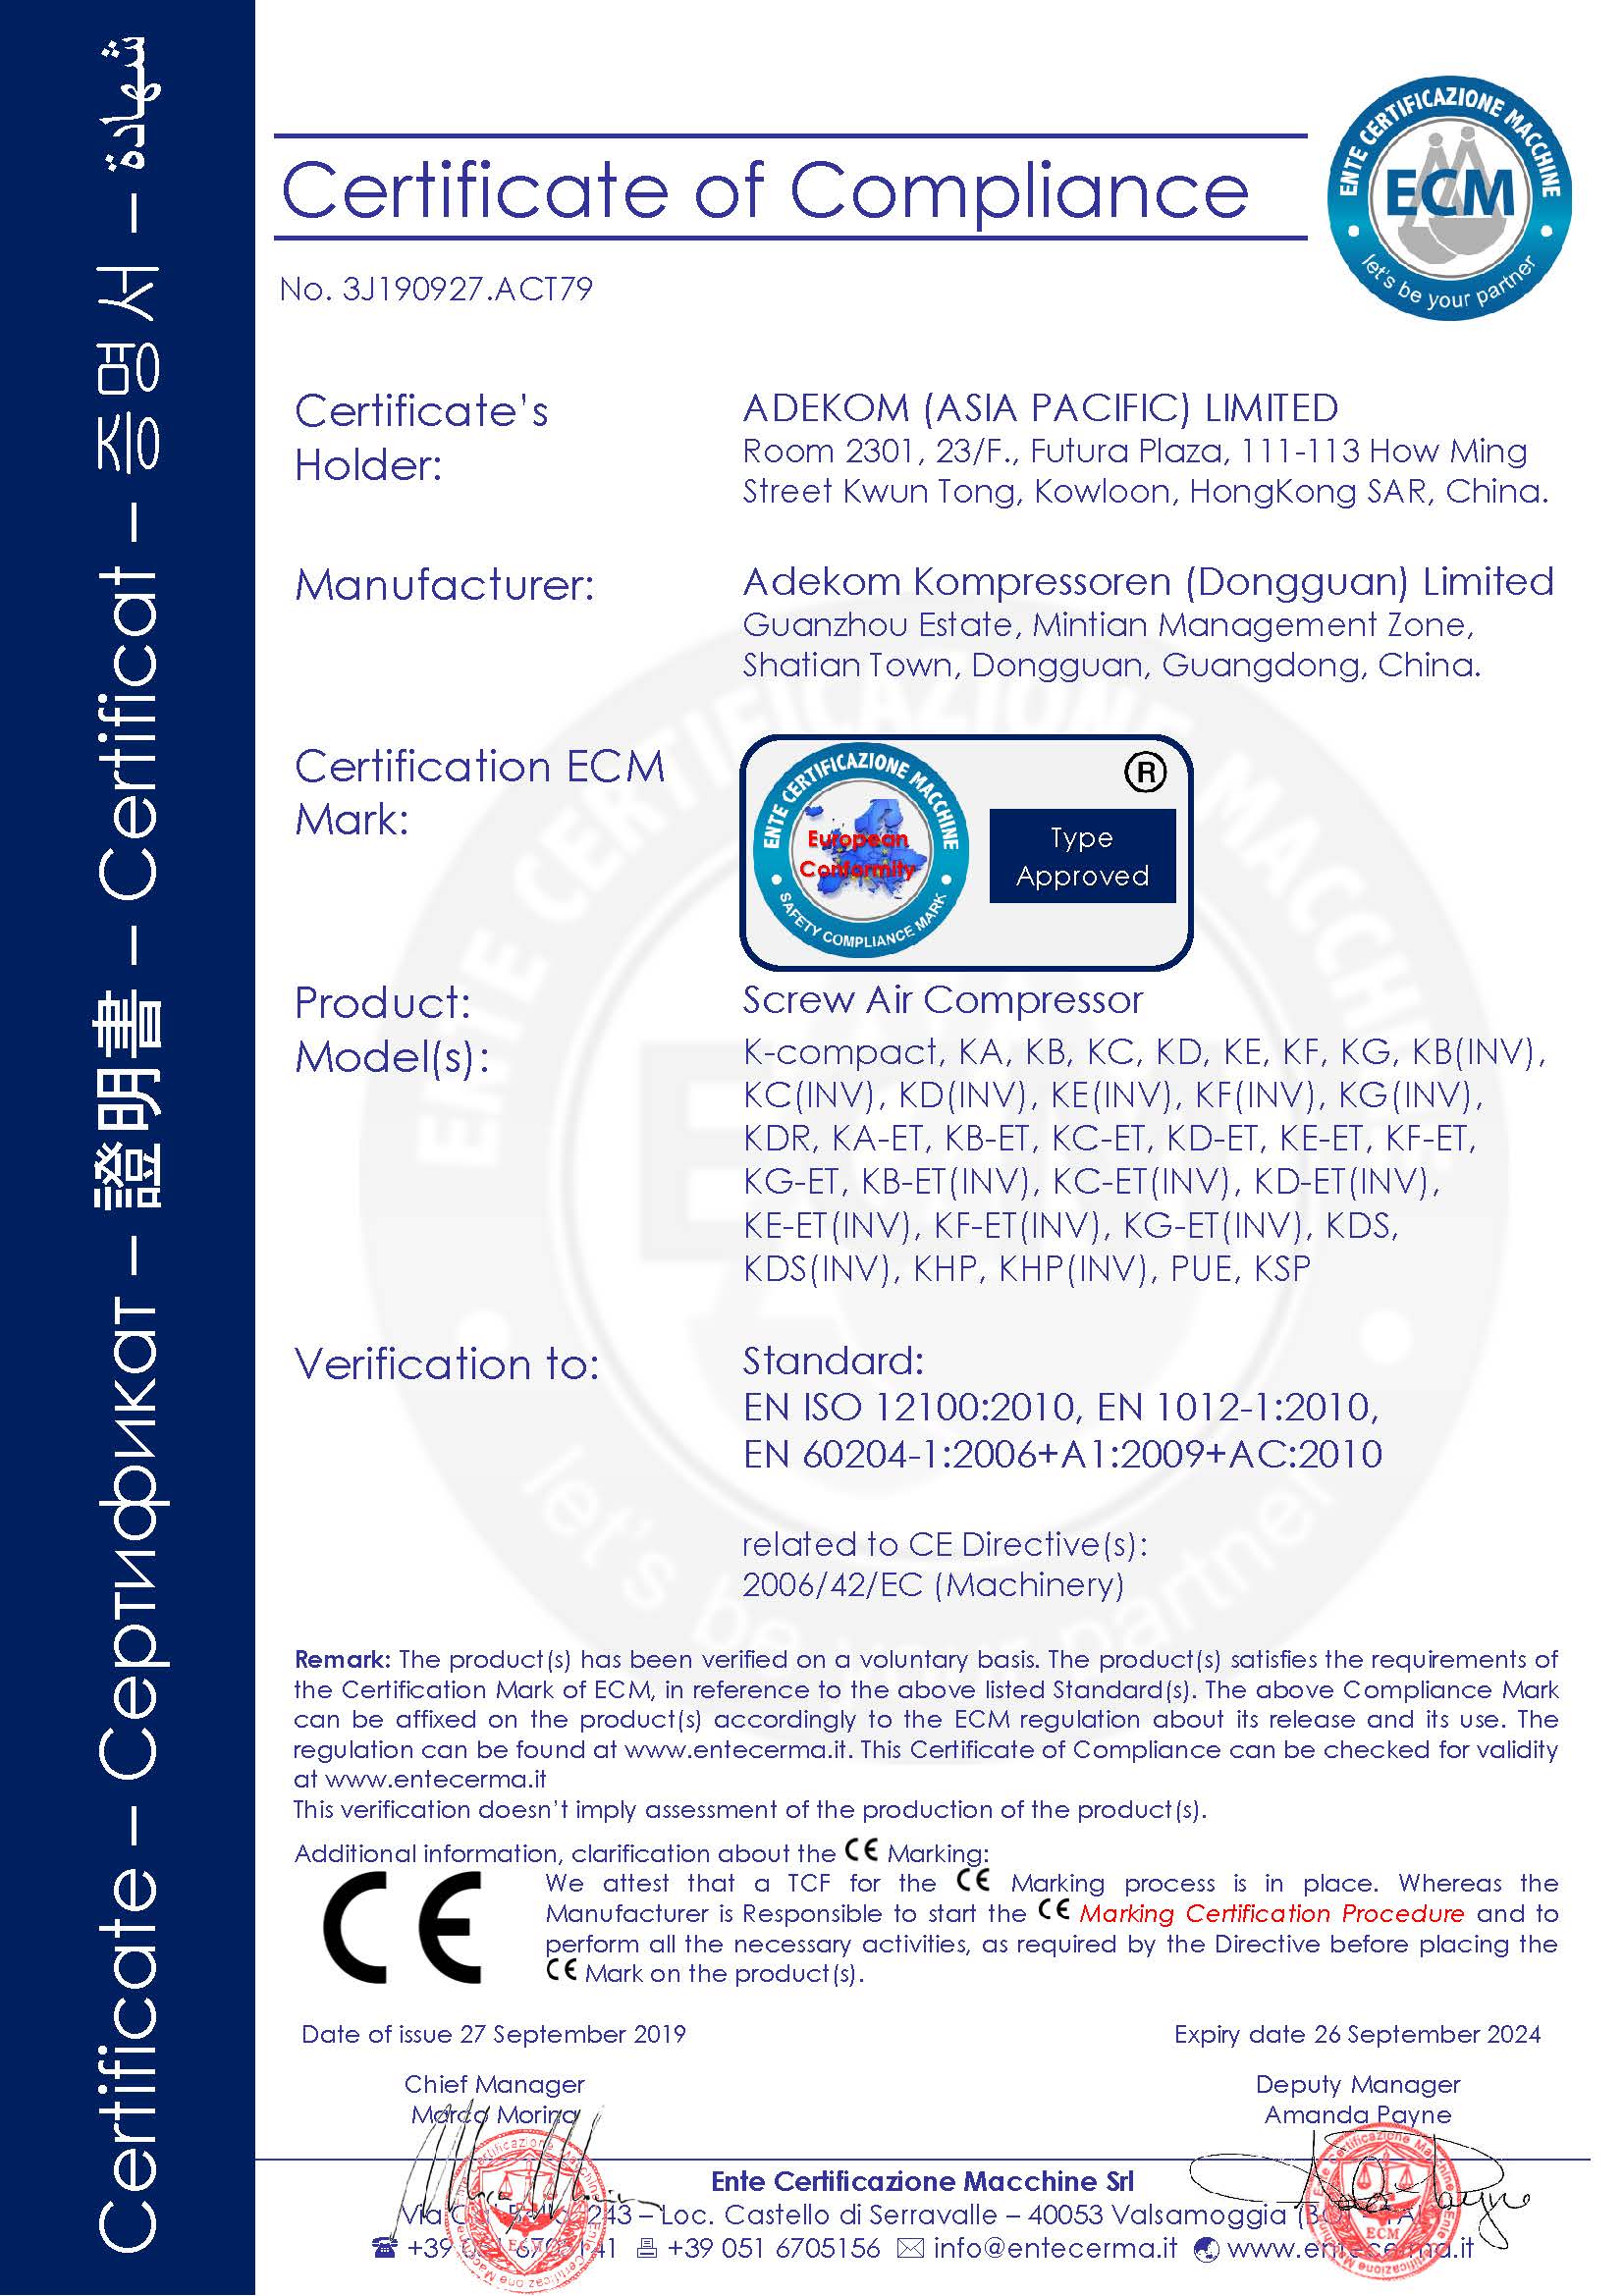 CE Certificate, Verification of Compliance, 2019